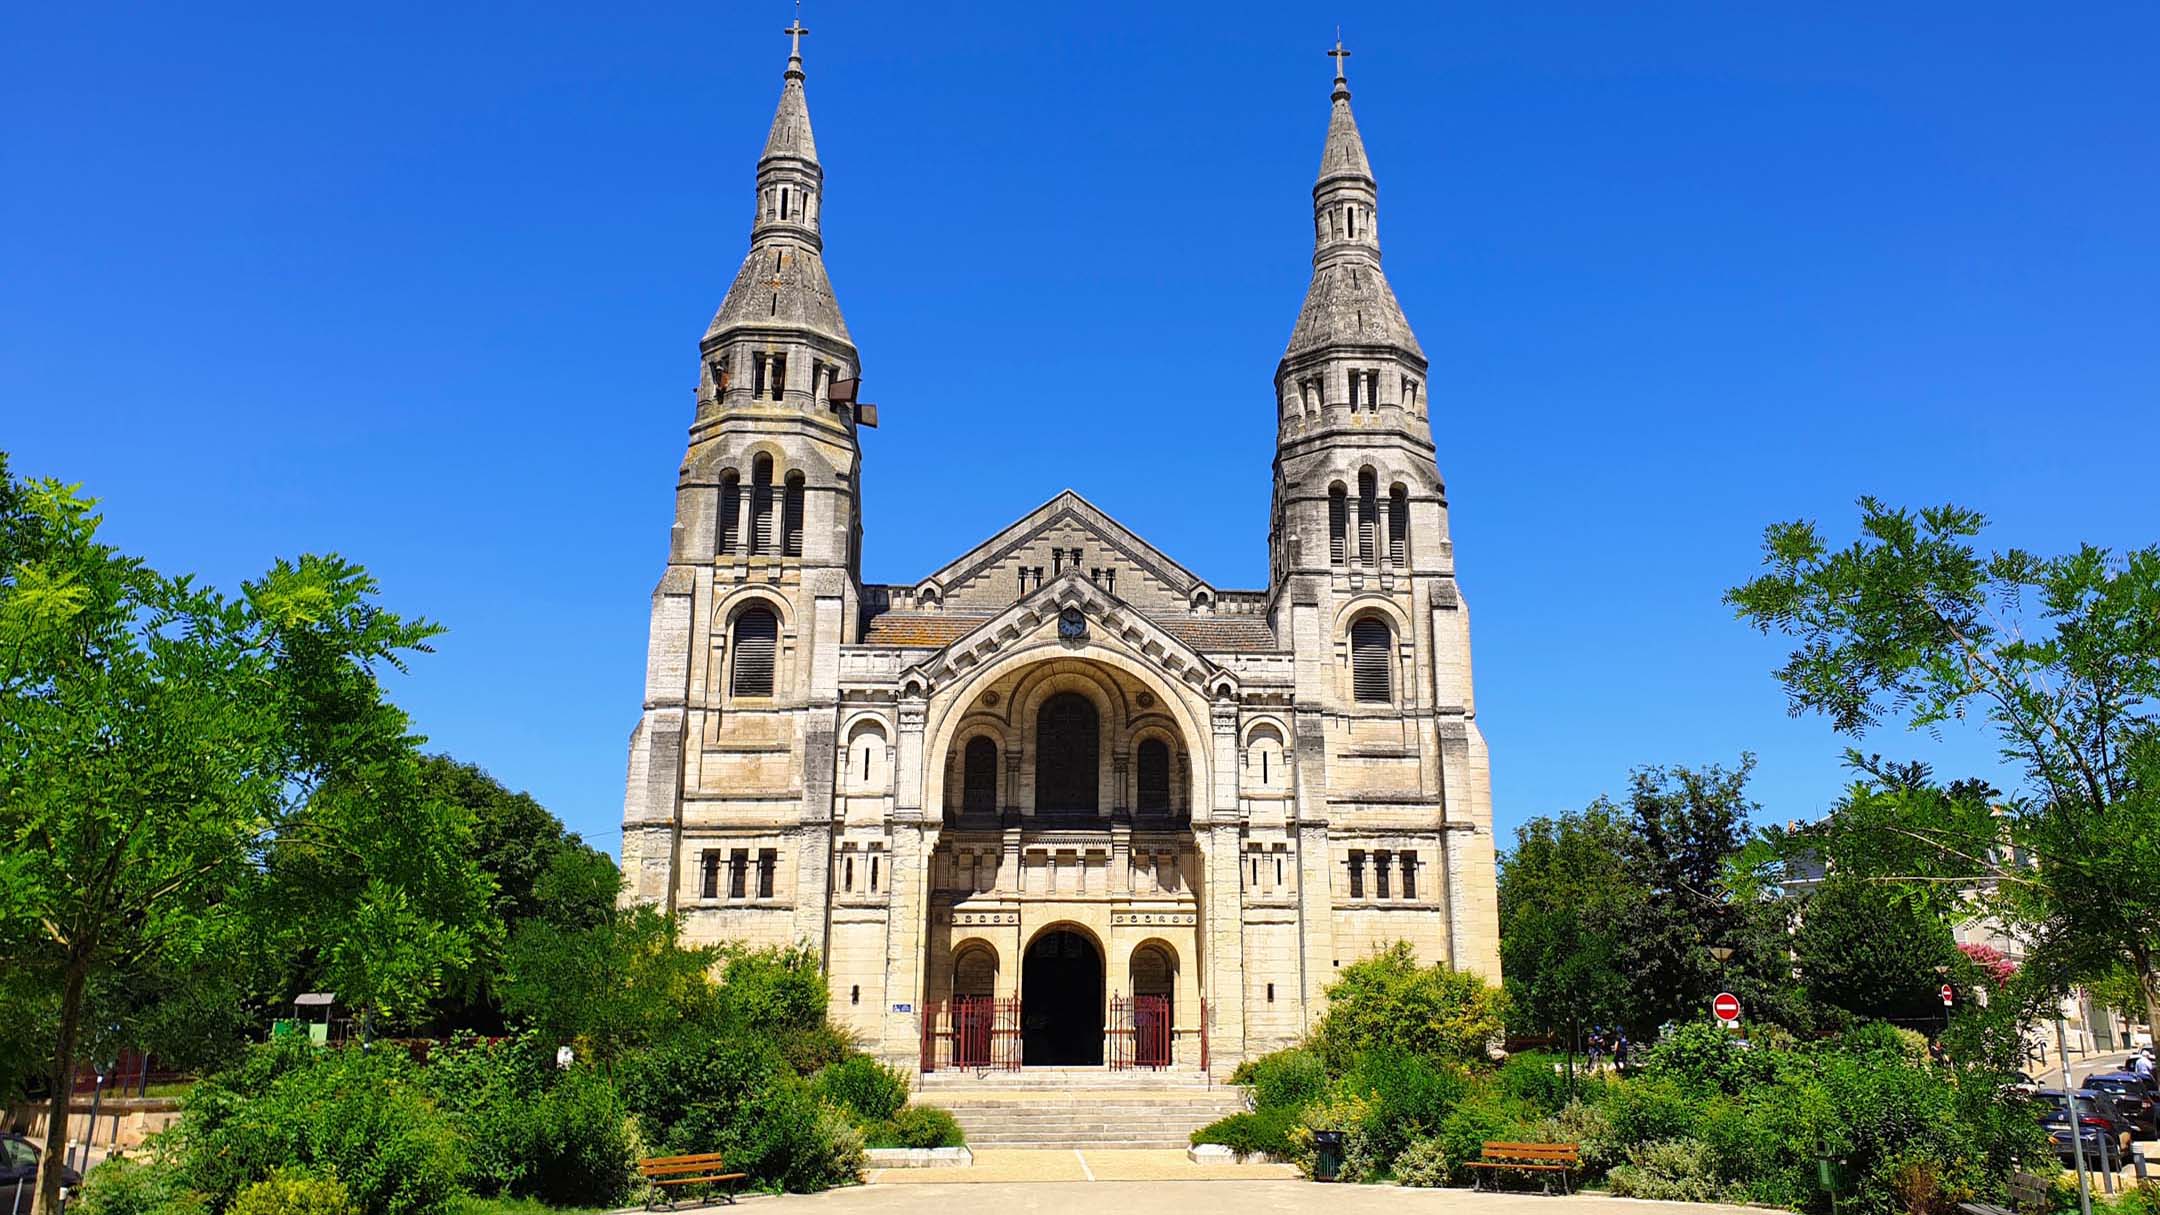 Église Saint-Martin de Périgueux